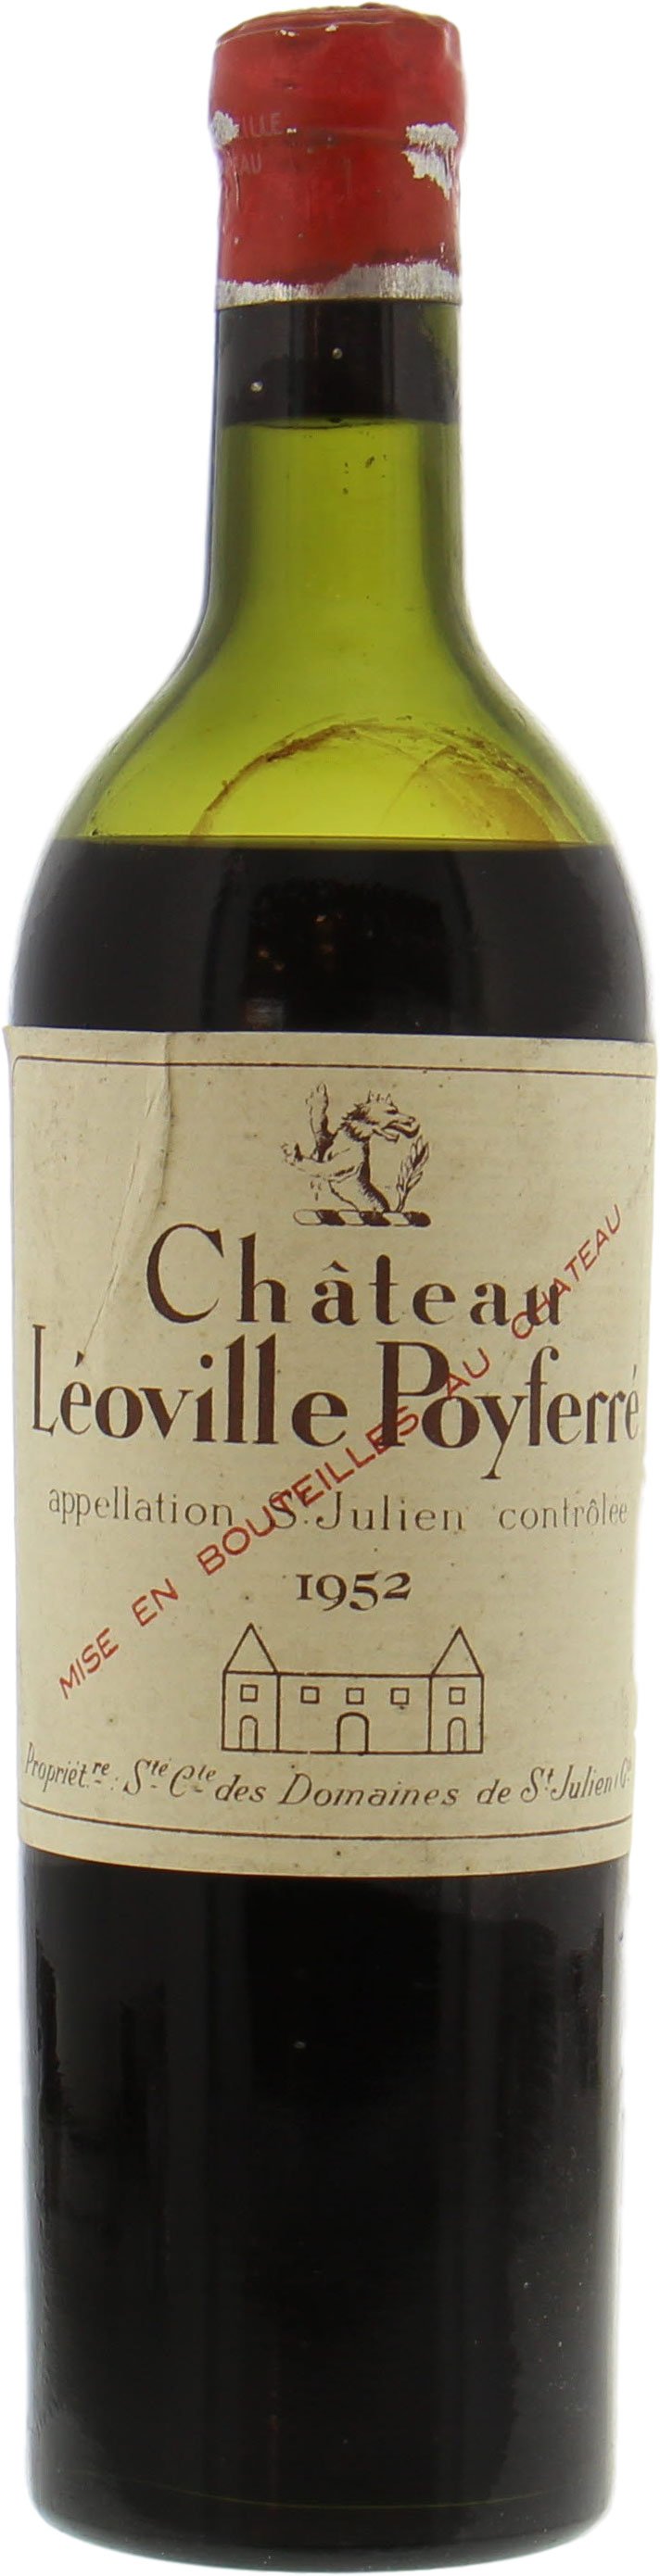 Chateau Leoville Poyferre - Chateau Leoville Poyferre 1952 Low shoulder